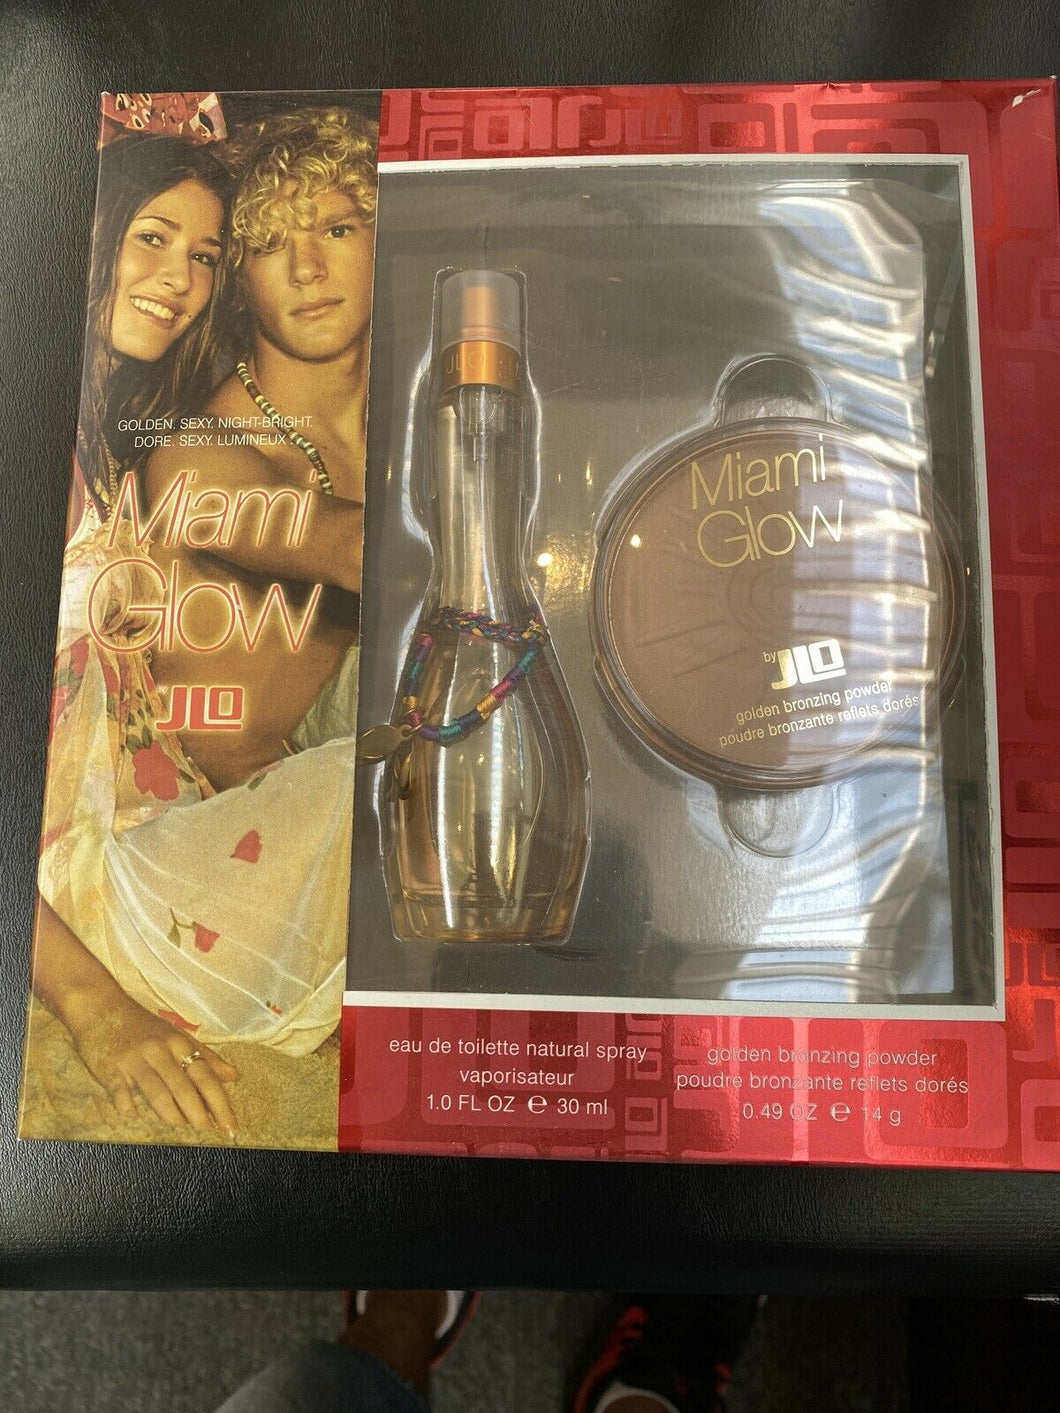 Jennifer Lopez Miami Glow EDT Toilette 2 Pc Gift Set 1oz Spray + Bronze Powder - Perfume Gallery